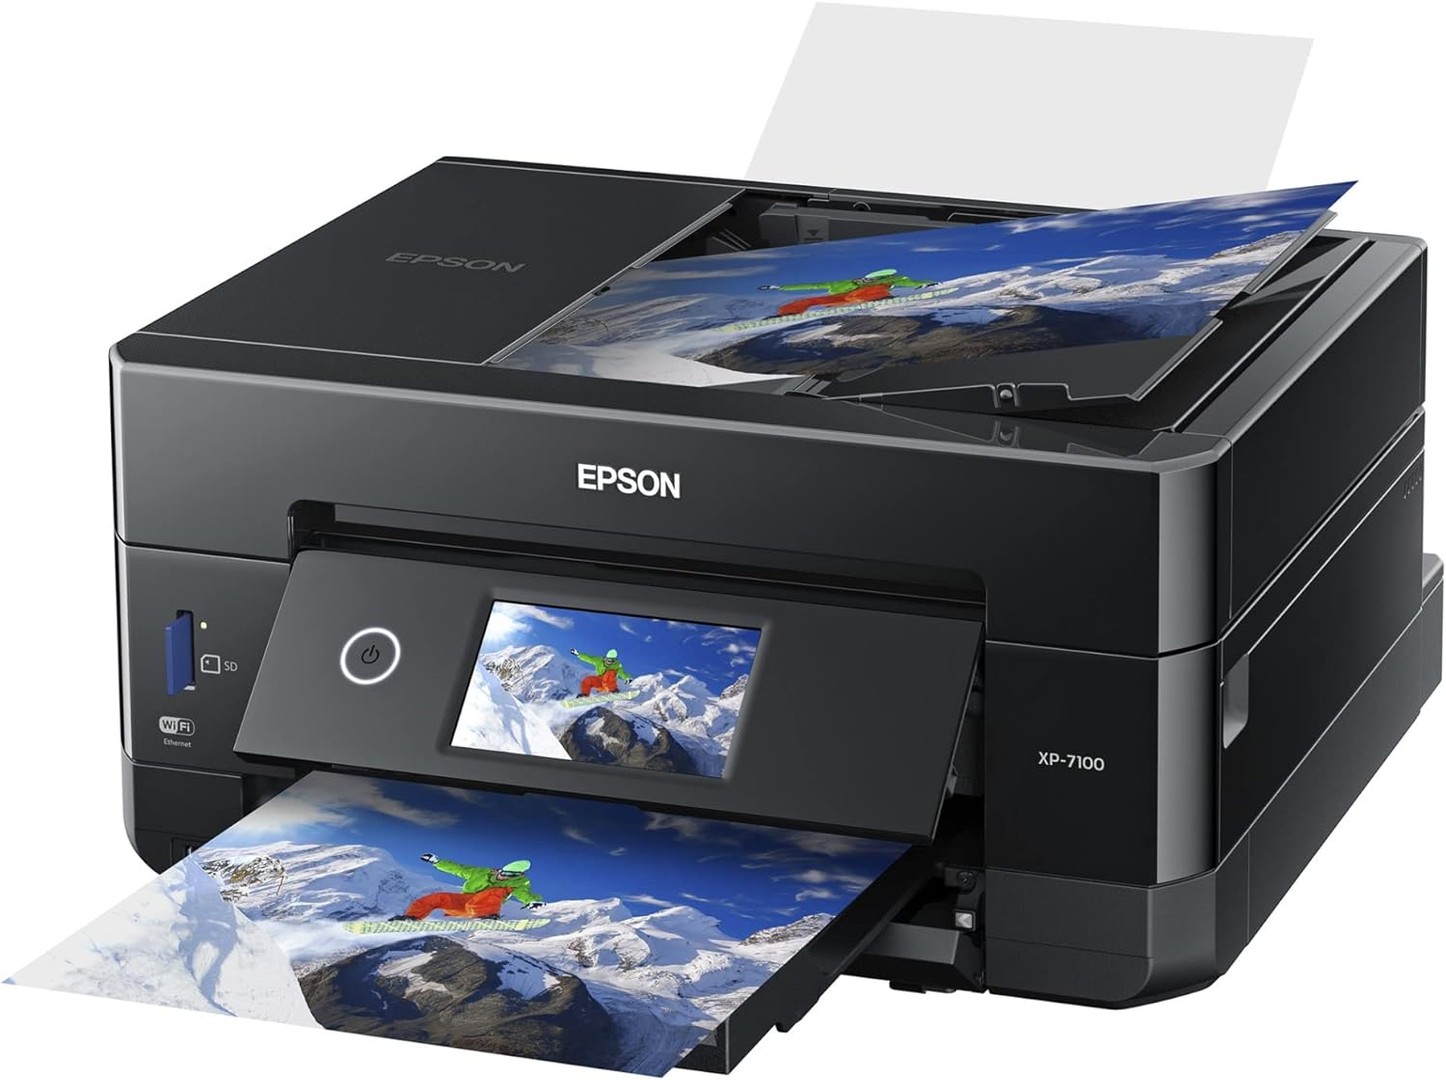 impresoras y scanners - Impresora Epson XP-7100 Expression de fotografía a color Premium Wireeles, usb 6